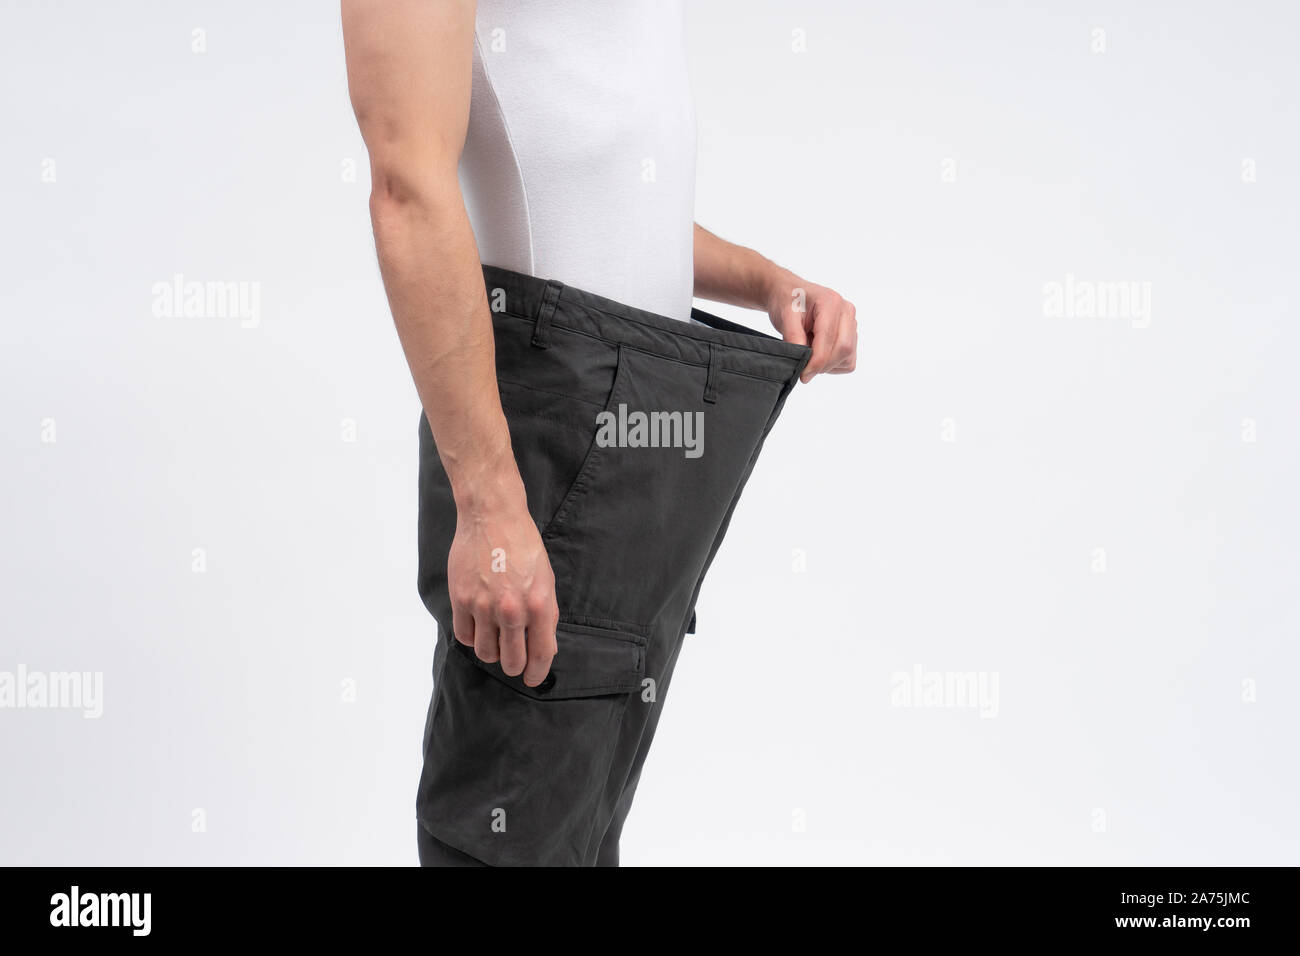 Dünner Mann seine Hose stretching Verlust von Gewicht nach der Diät zu zeigen. Person isoliert auf weißem Hintergrund mit kopieren. Andere Größe kleider Lieferung. Stockfoto